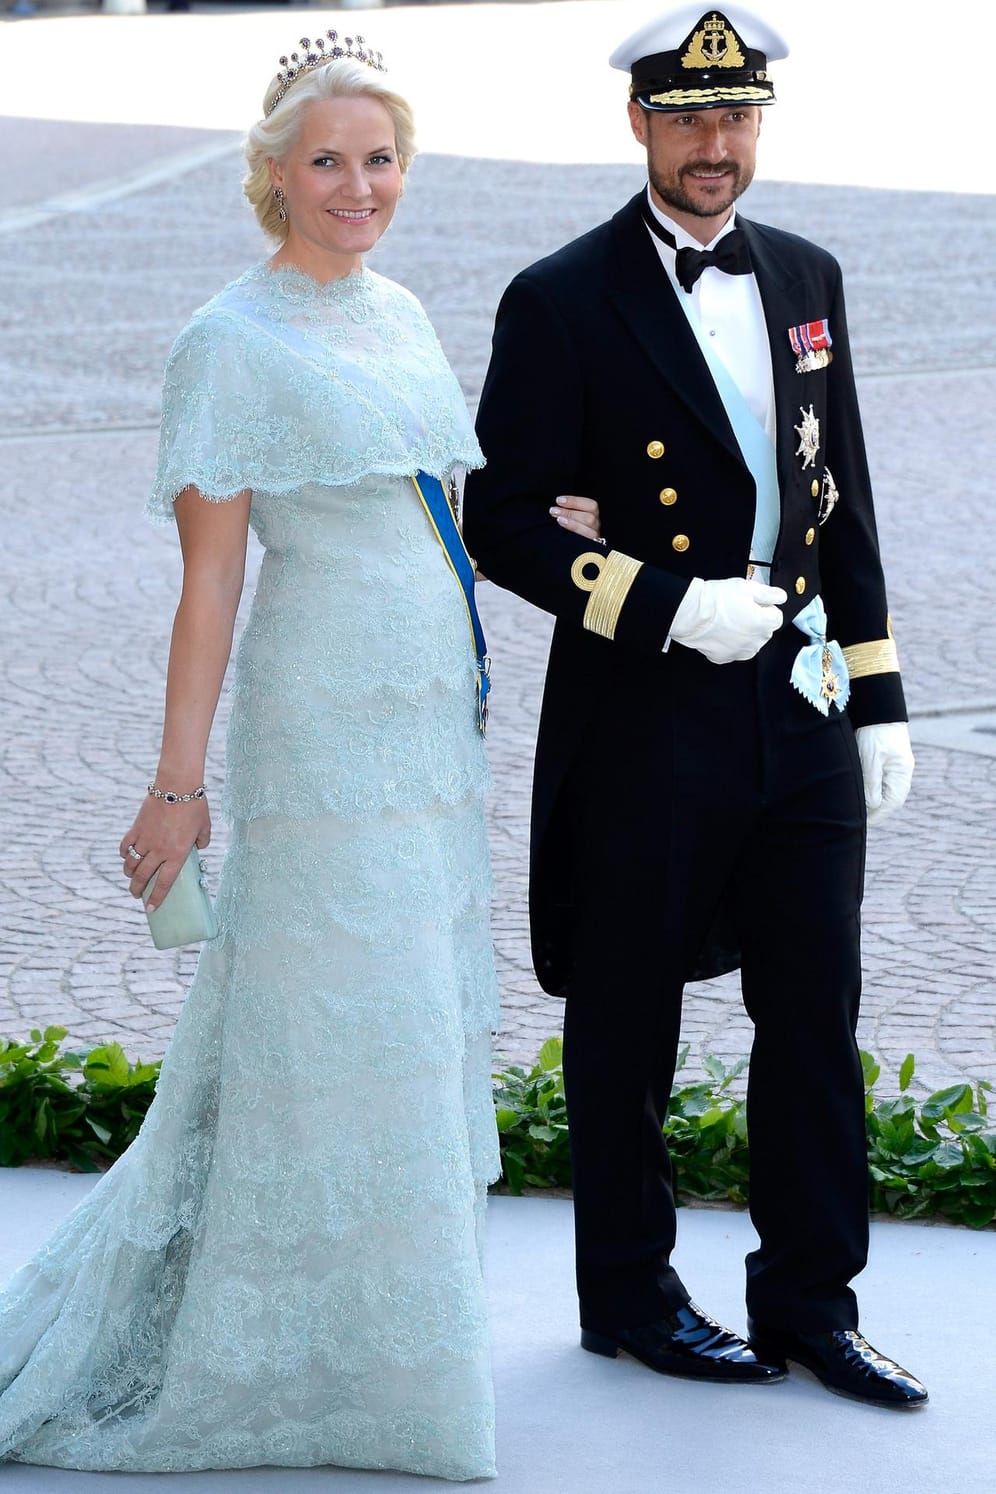 Kronprinzessin Mette-Marit und Kronprinz Haakon: Der norwegische Thronfolger verliebte sich in die alleinerziehende Mutter. Die Hochzeit im Sommer 2001 war zunächst umstritten.